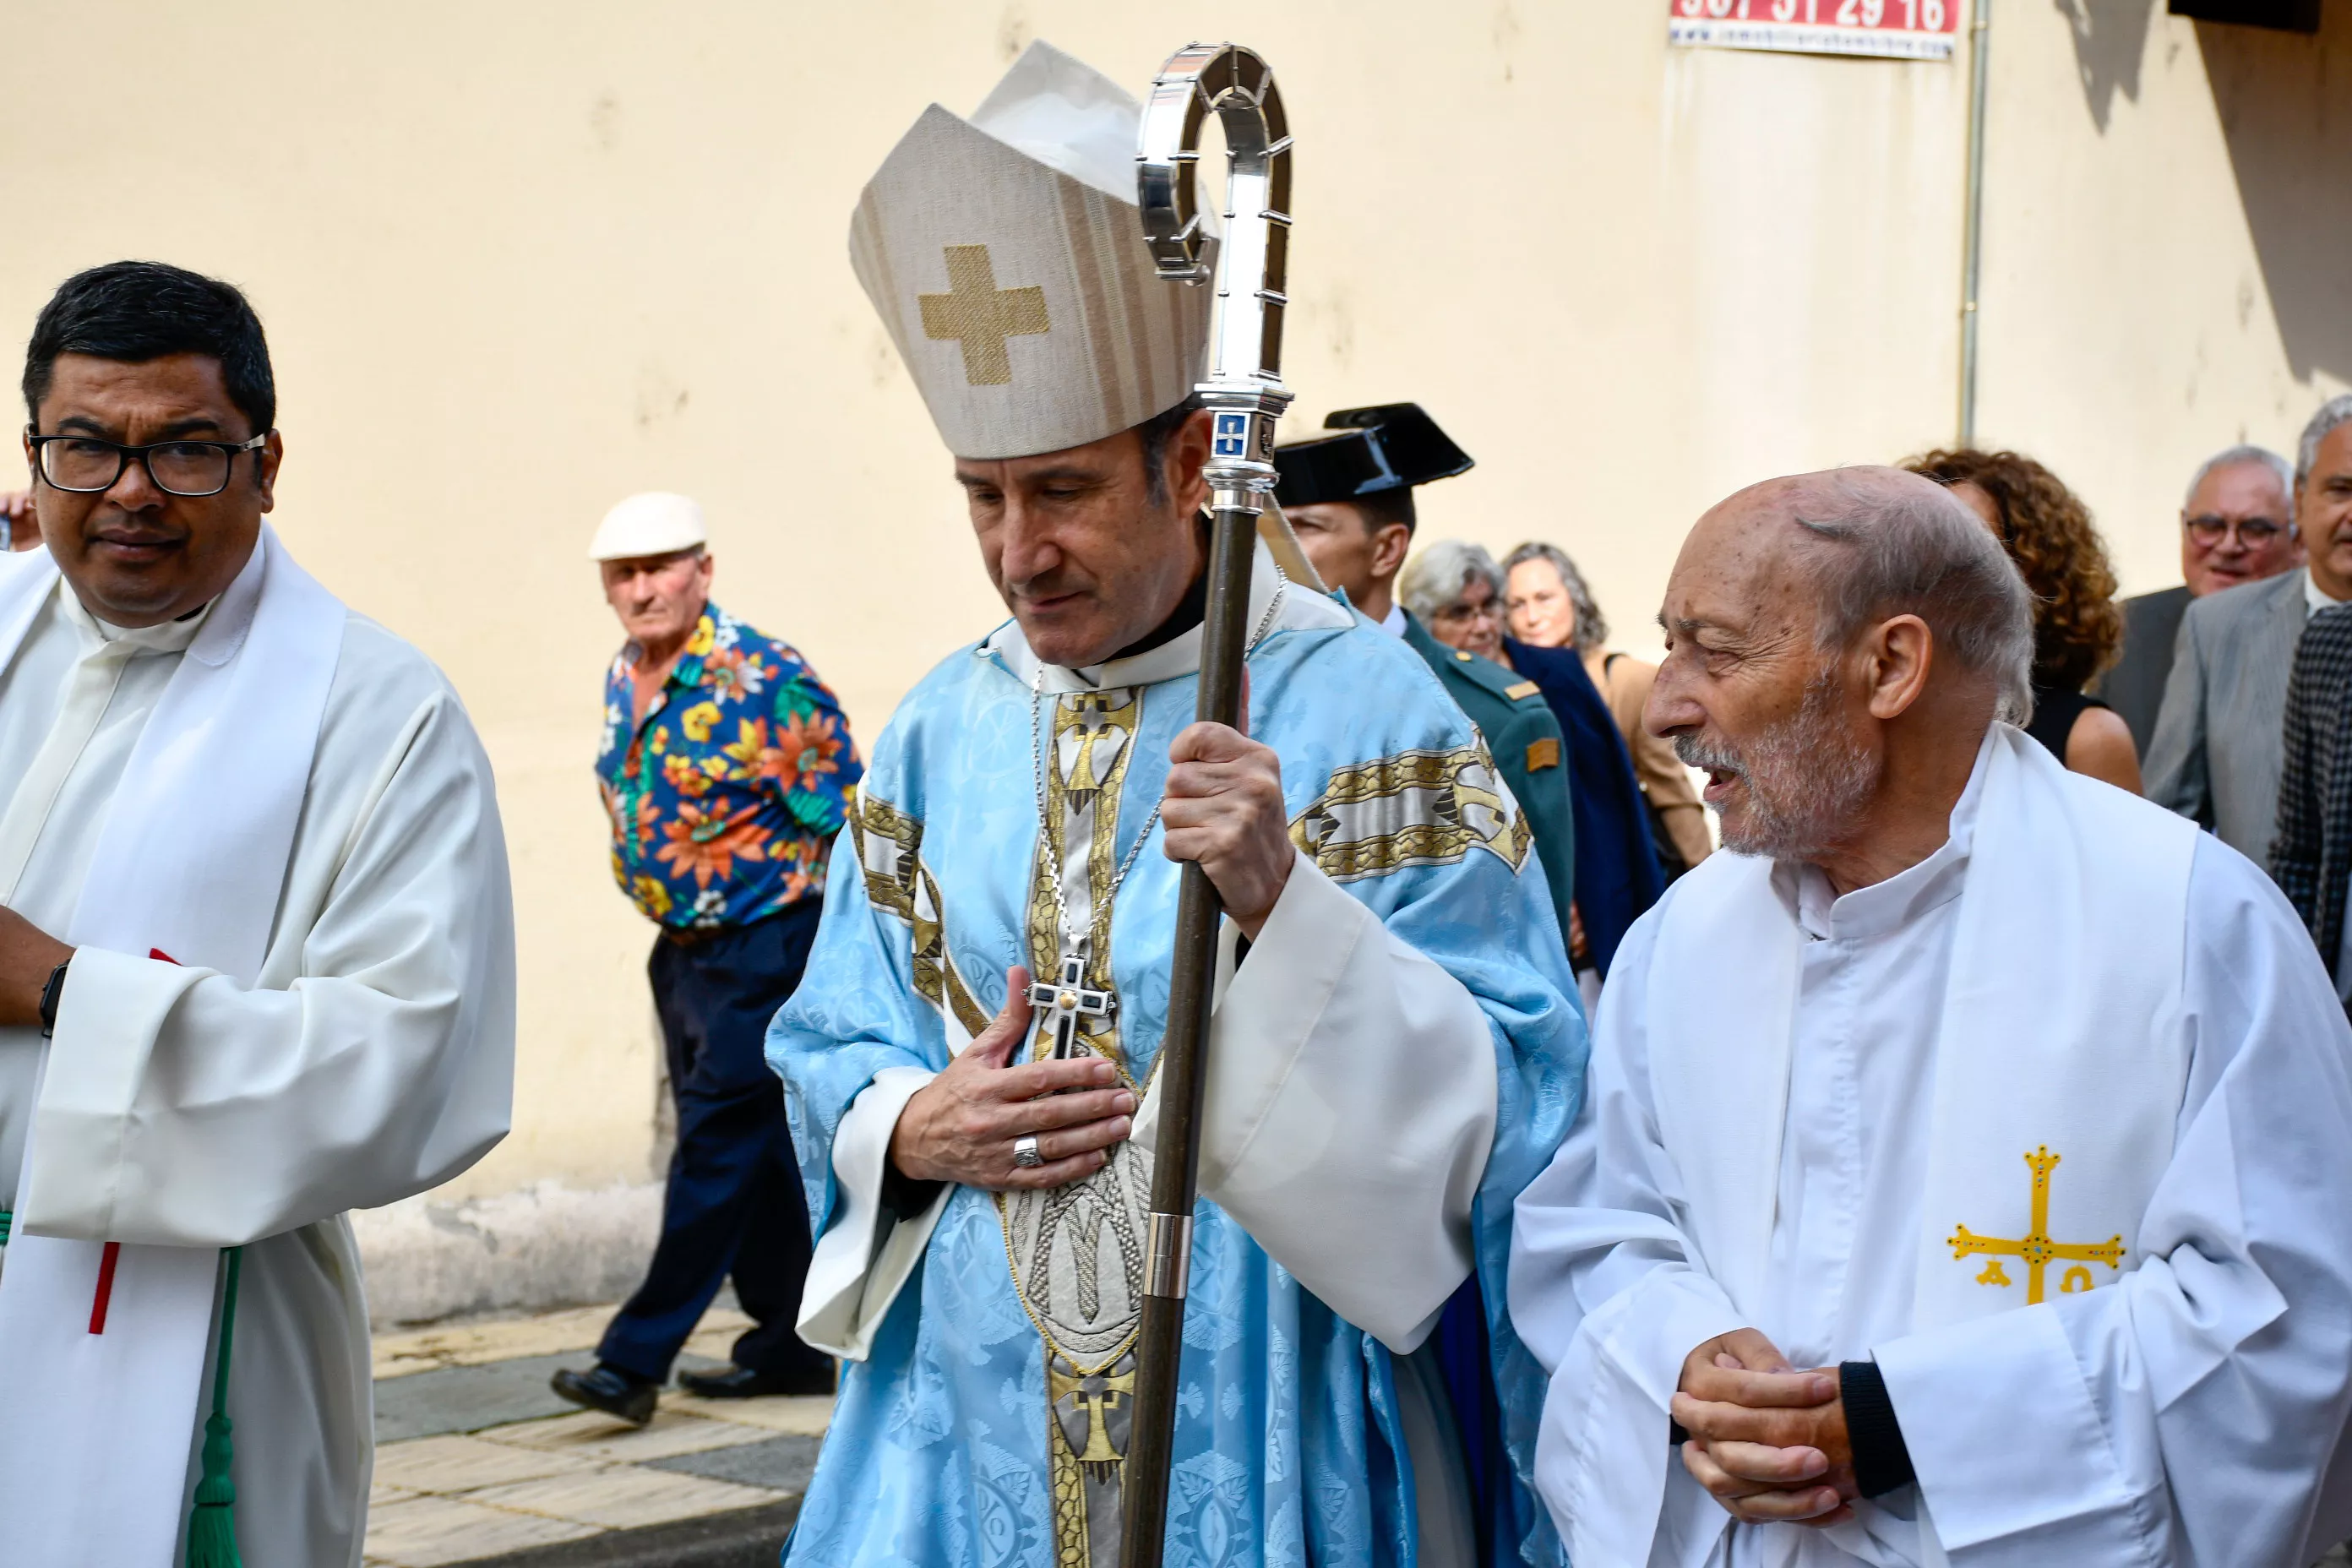  Tradicional procesión y comitiva de autoridades en el día del Cristín de Bembibre  (46)